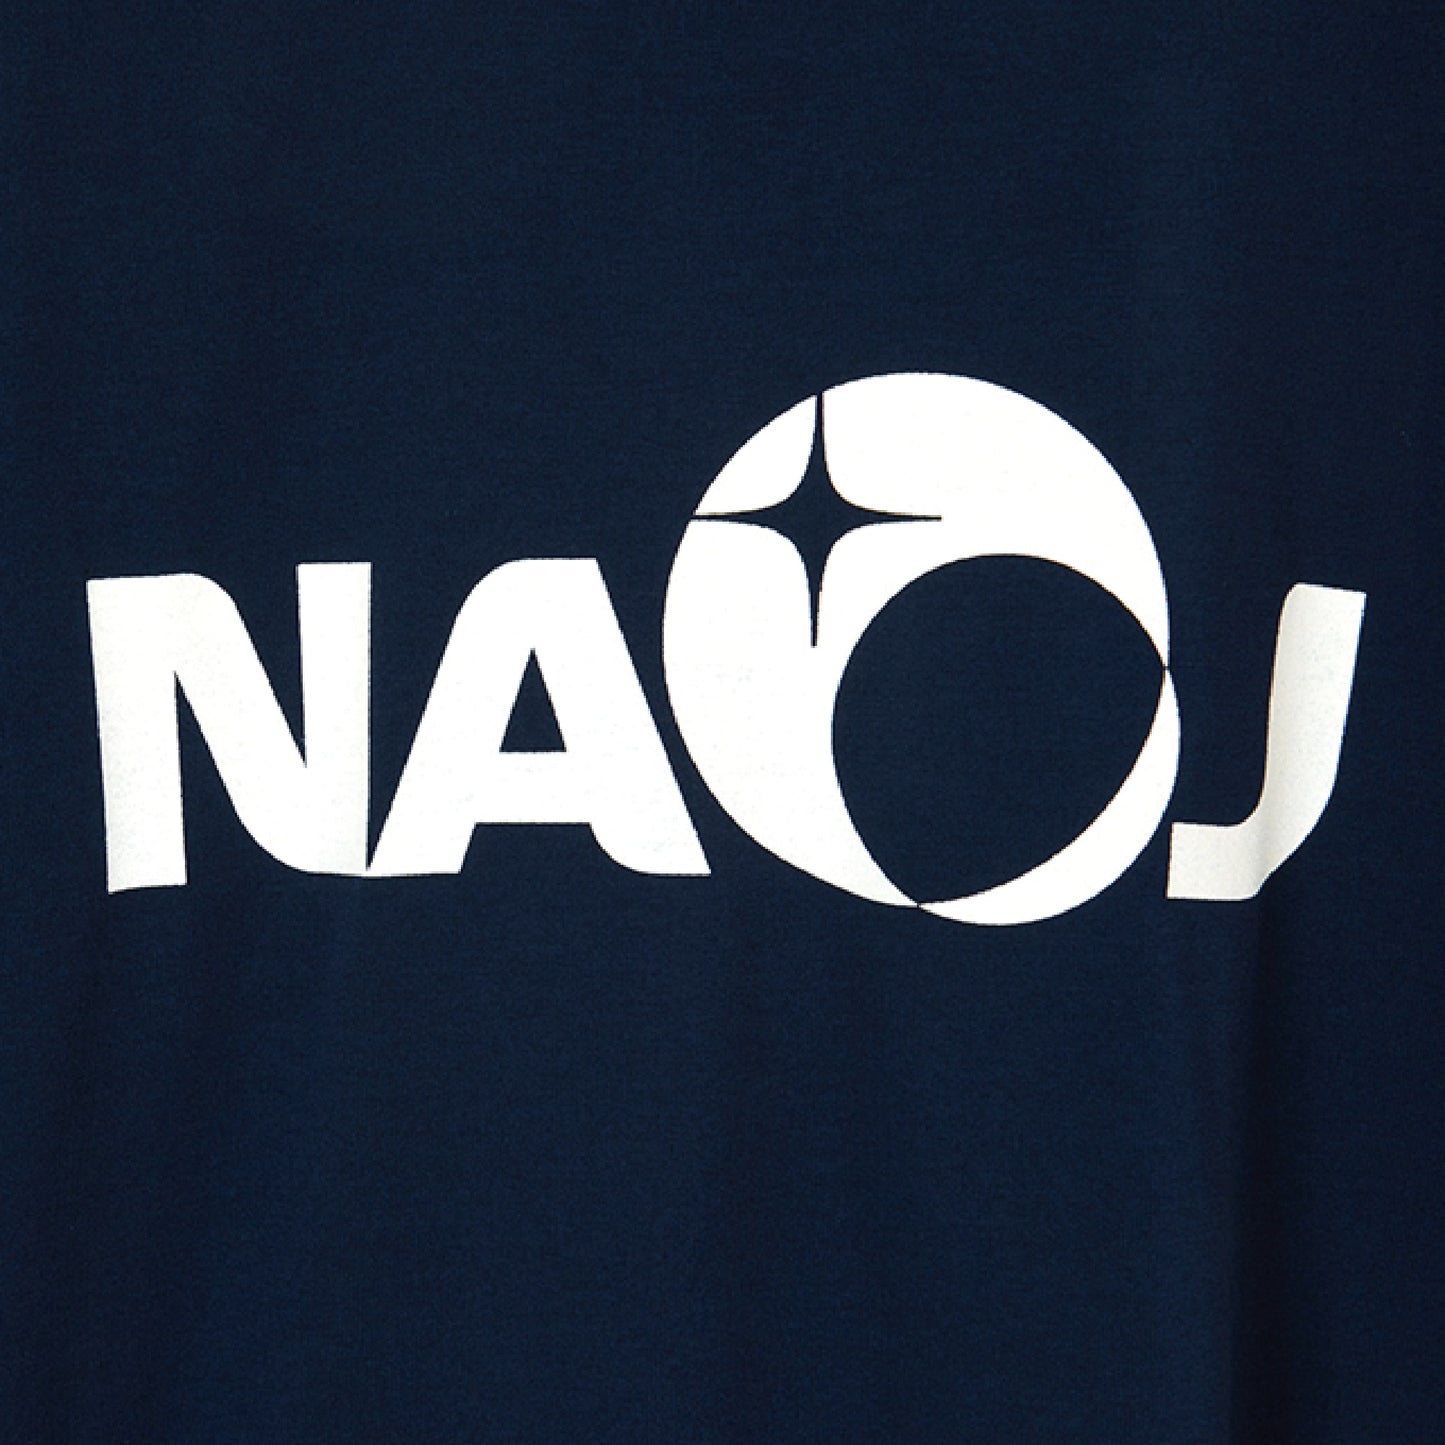 国立天文台 NAOJ ロゴマーク WIC. Tシャツ ネイビー M 02 1334